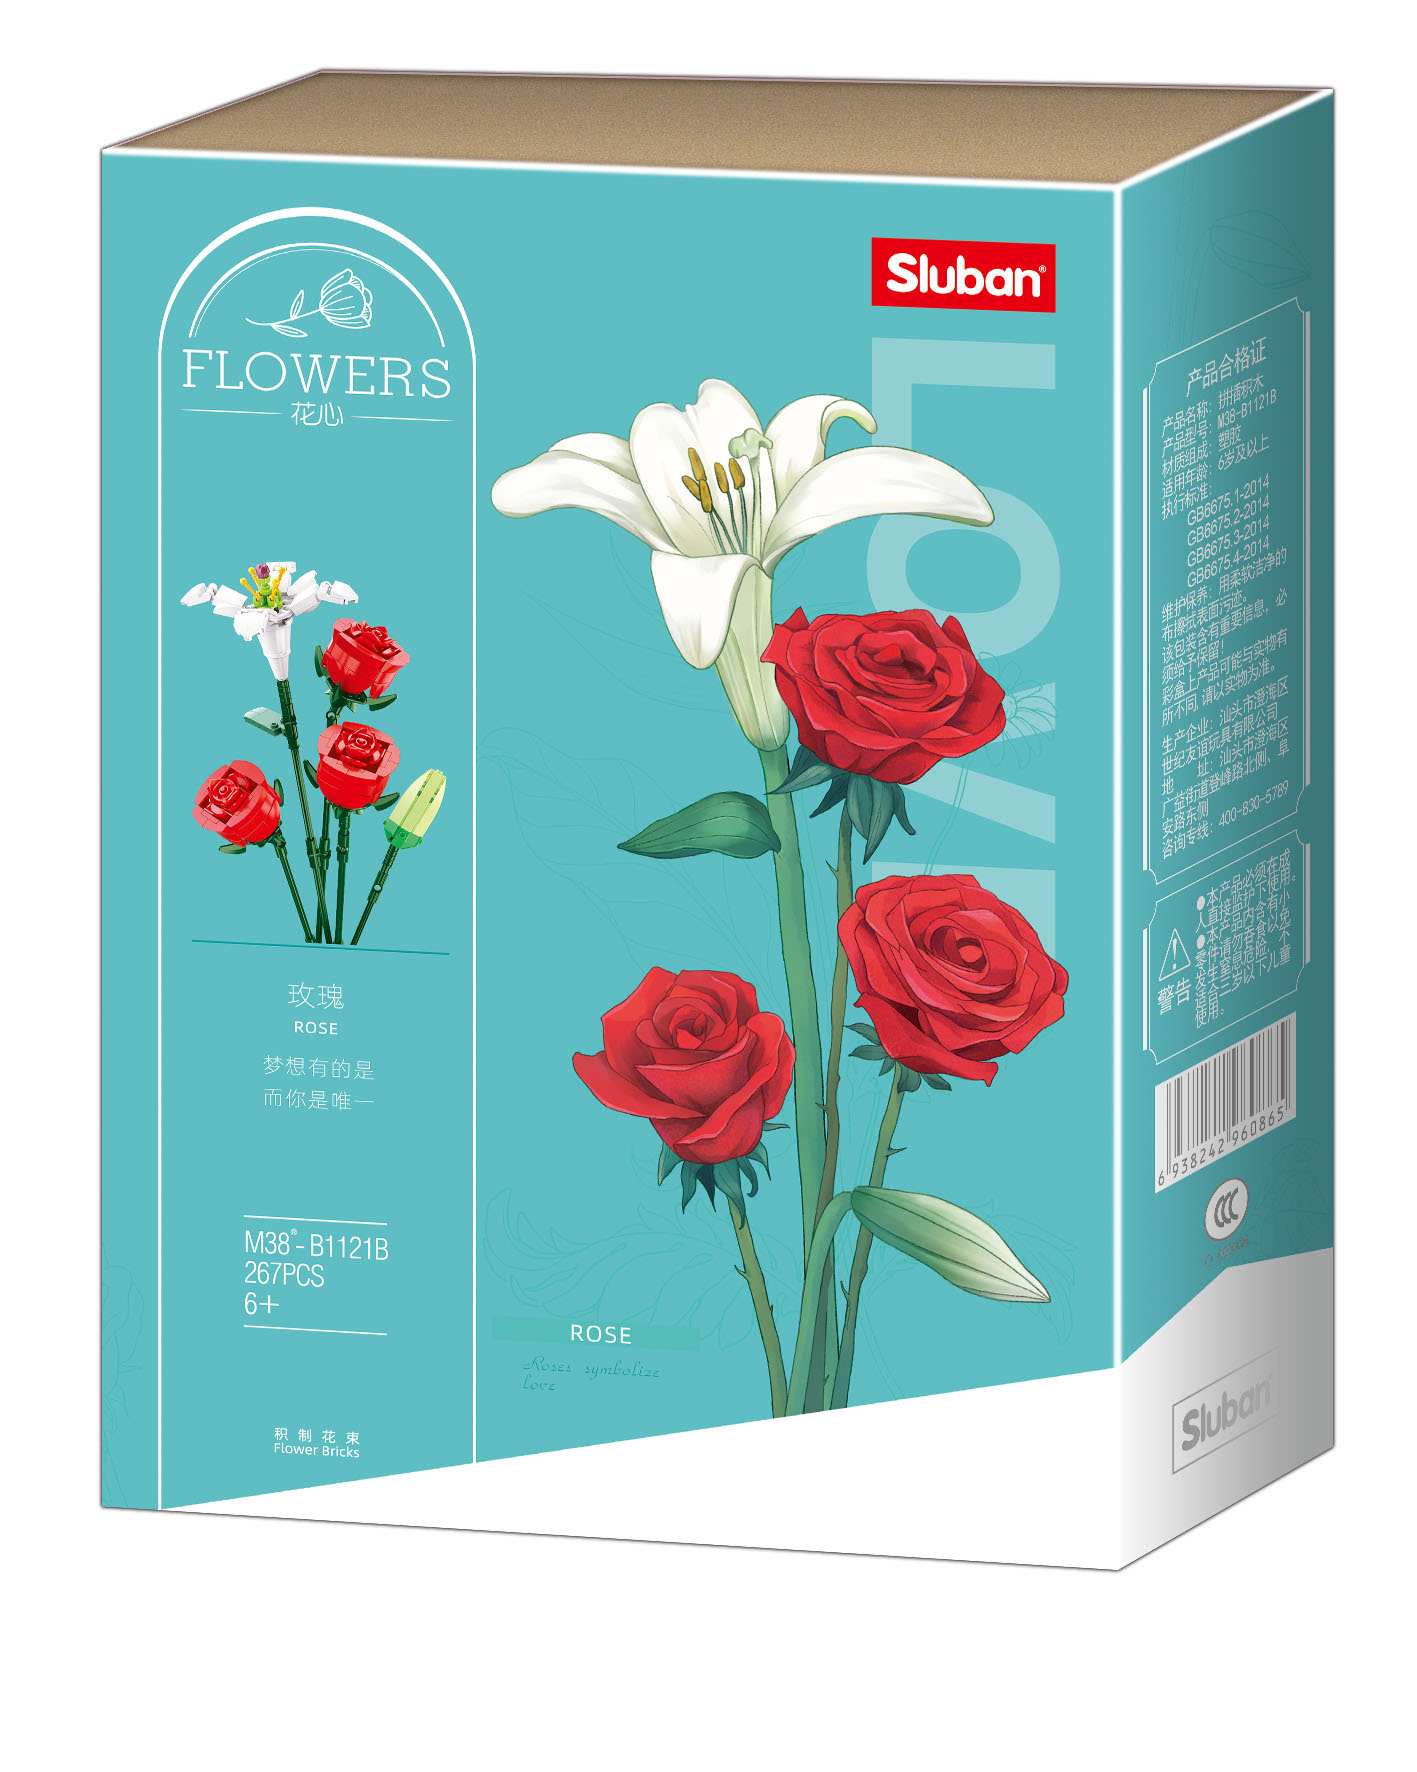 Sluban Flowers-Rose 267pcs 12+